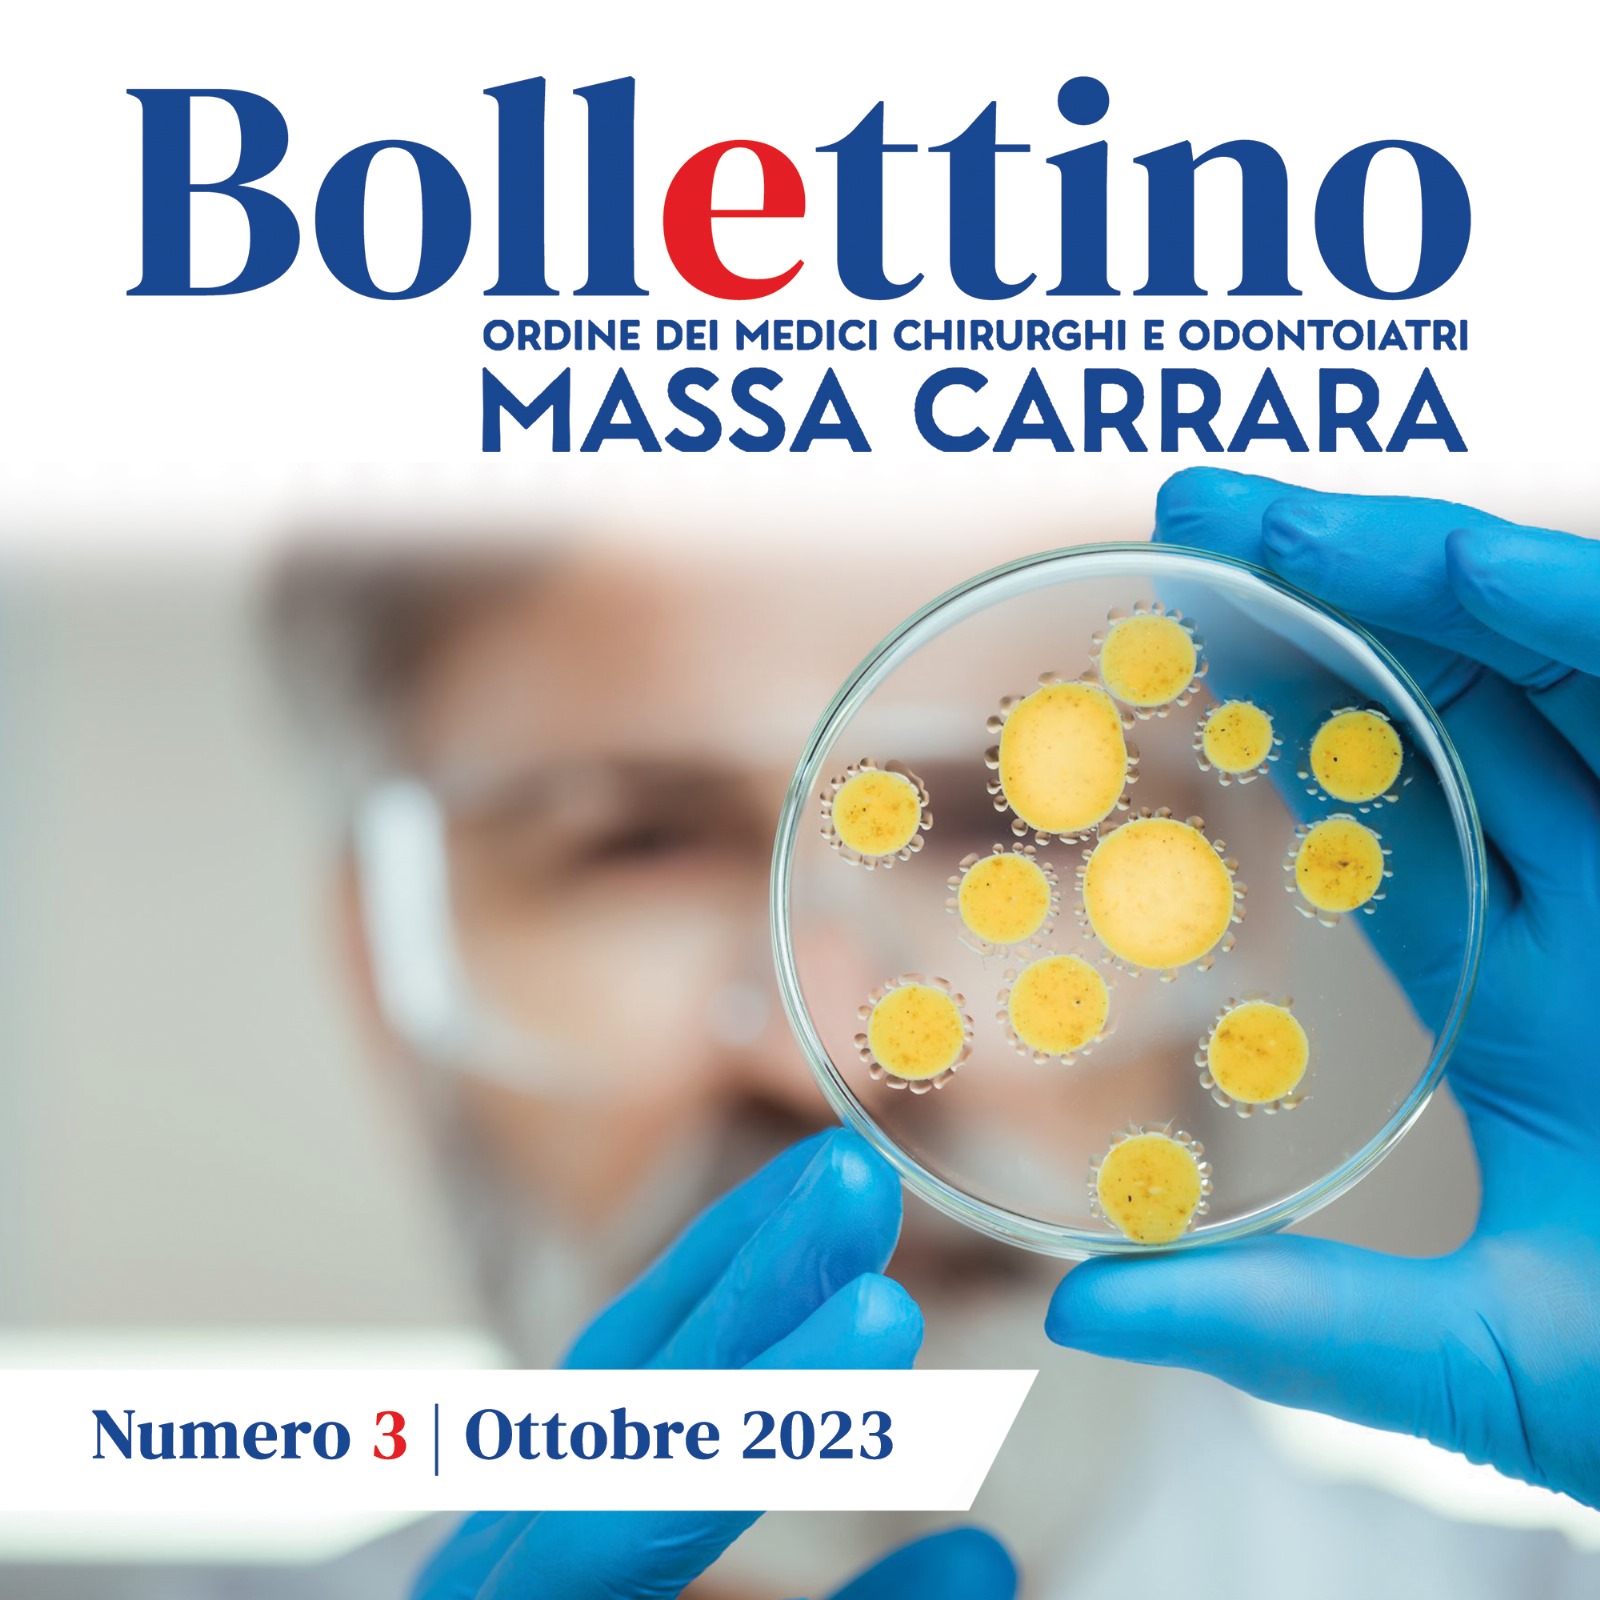 Clicca per accedere all'articolo Bollettino OMCeO - Ottobre 2023